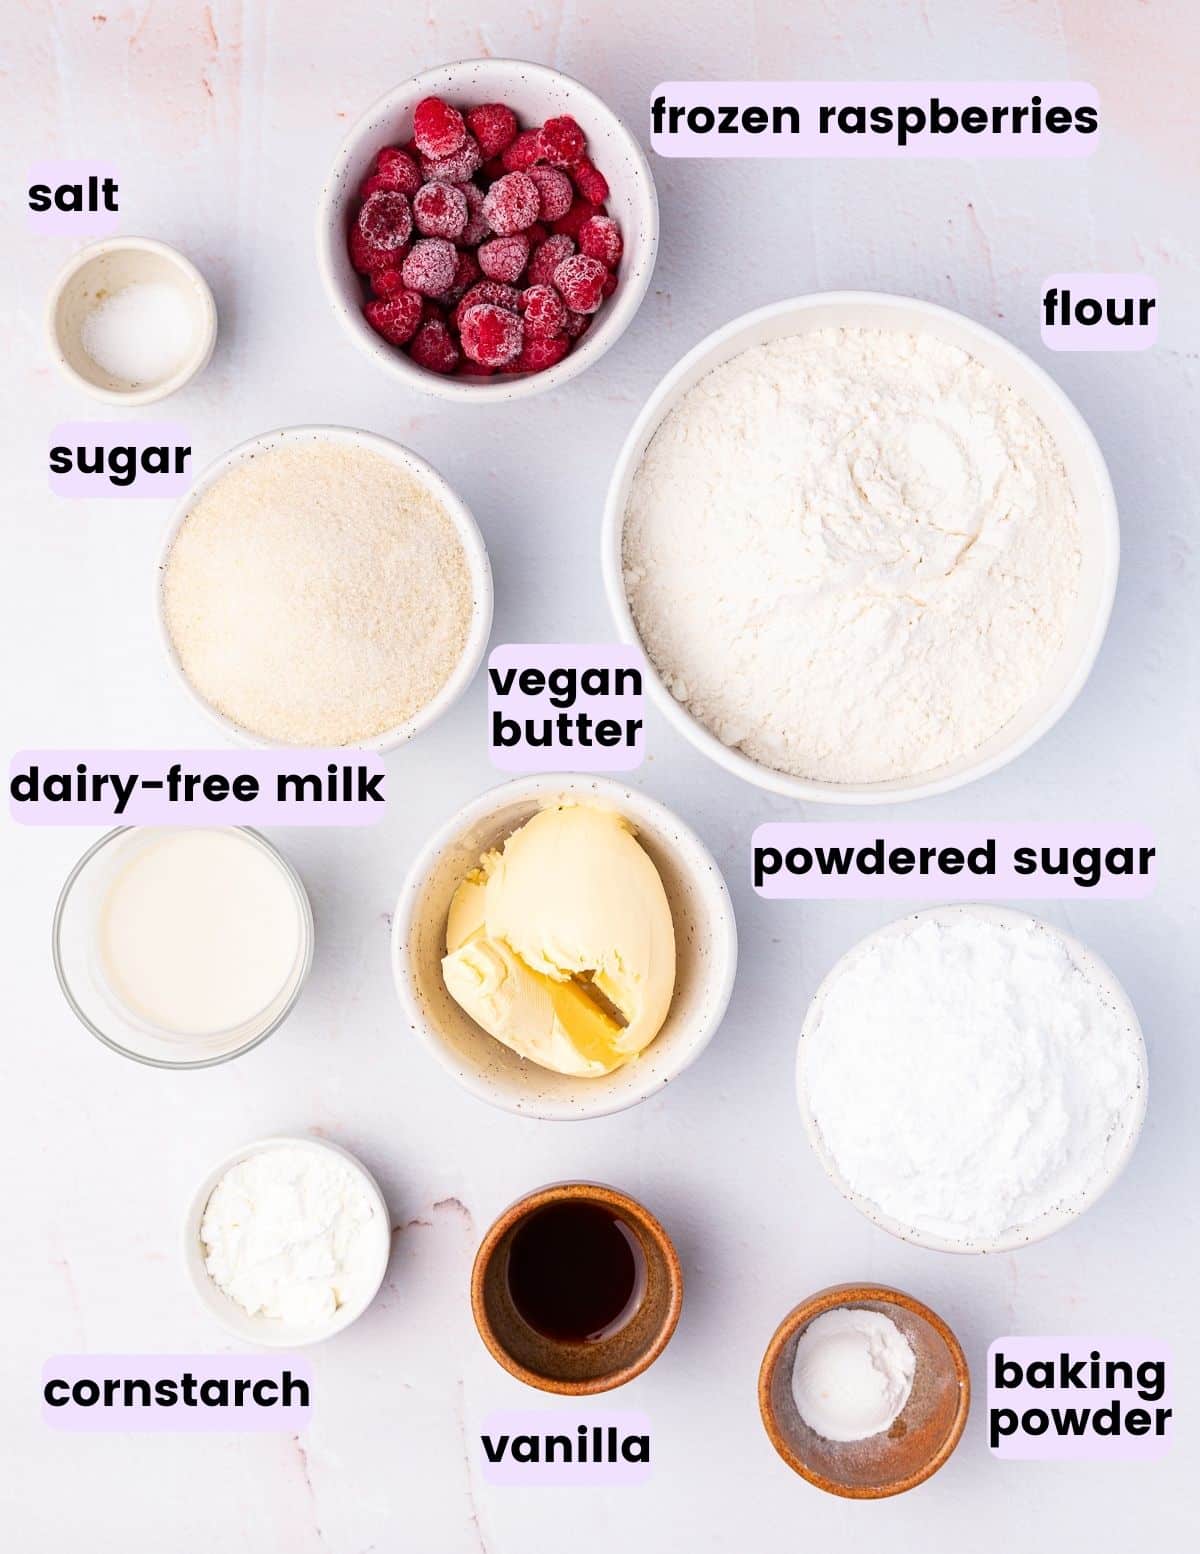 frozen raspberries, salt, sugar, flour, vegan butter, dairy-free milk, powdered sugar, vegan butter, cornstarch, vanilla, baking powder. 